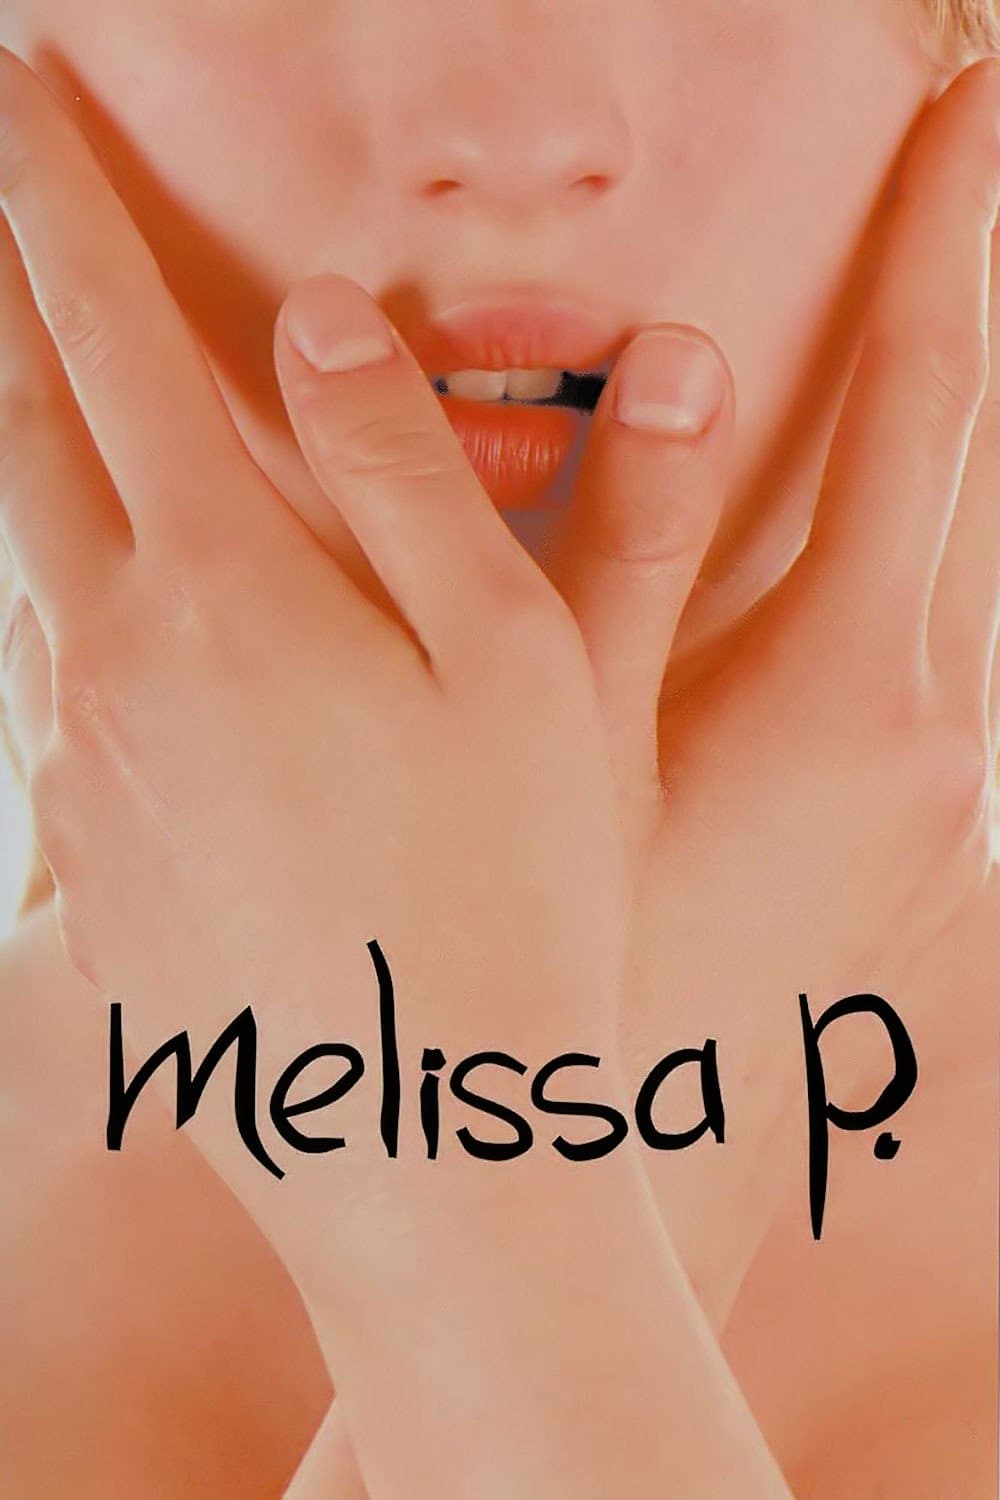 Melissa P. (Melissa P.) [2005]